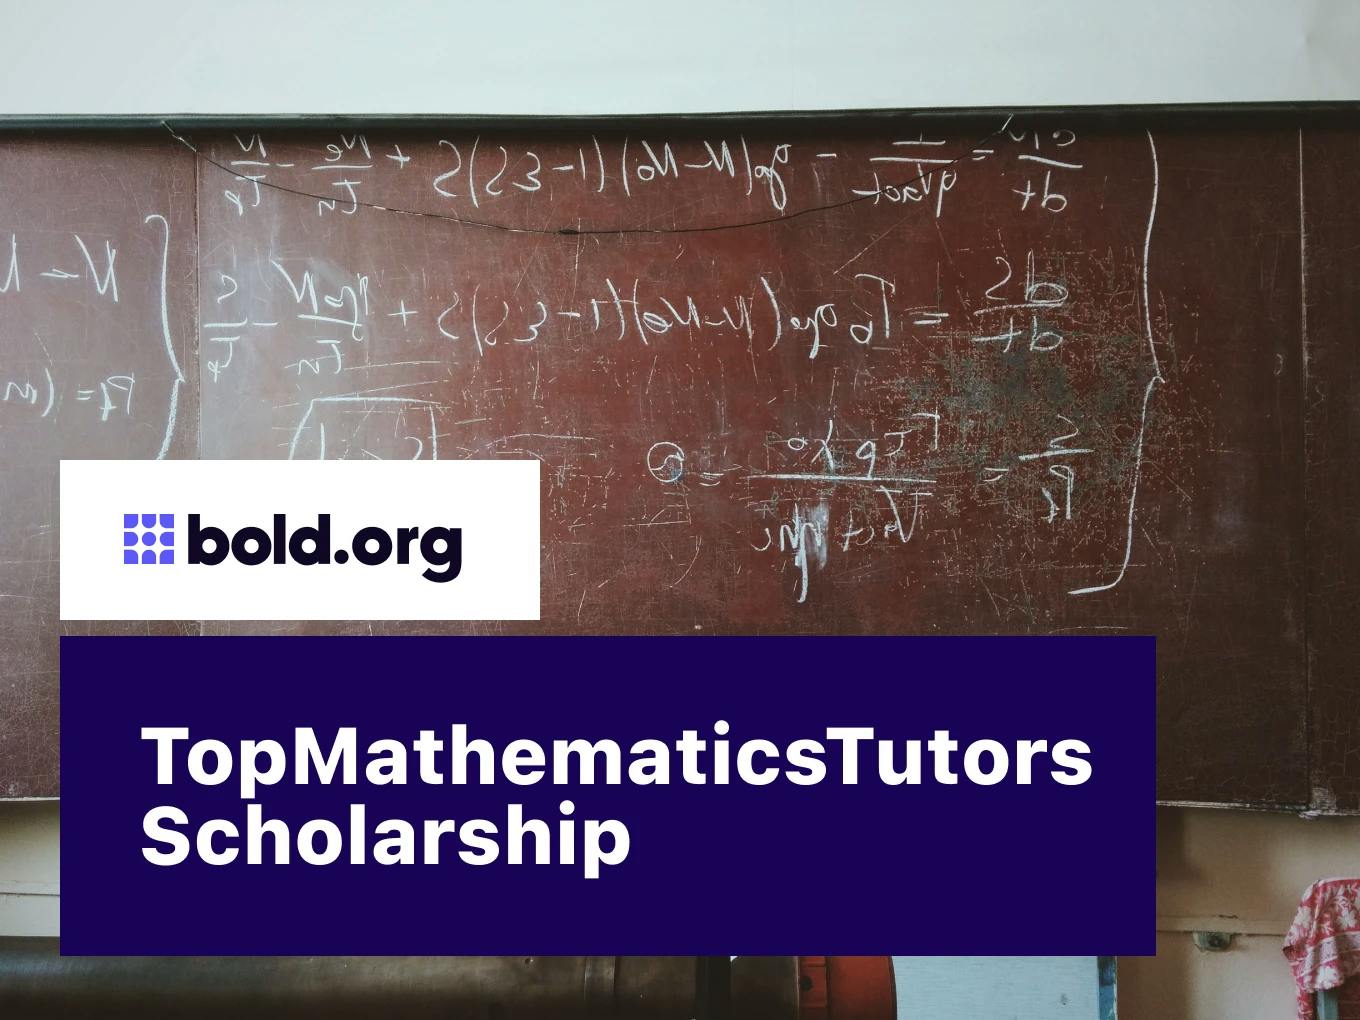 TopMathematicsTutors Scholarship